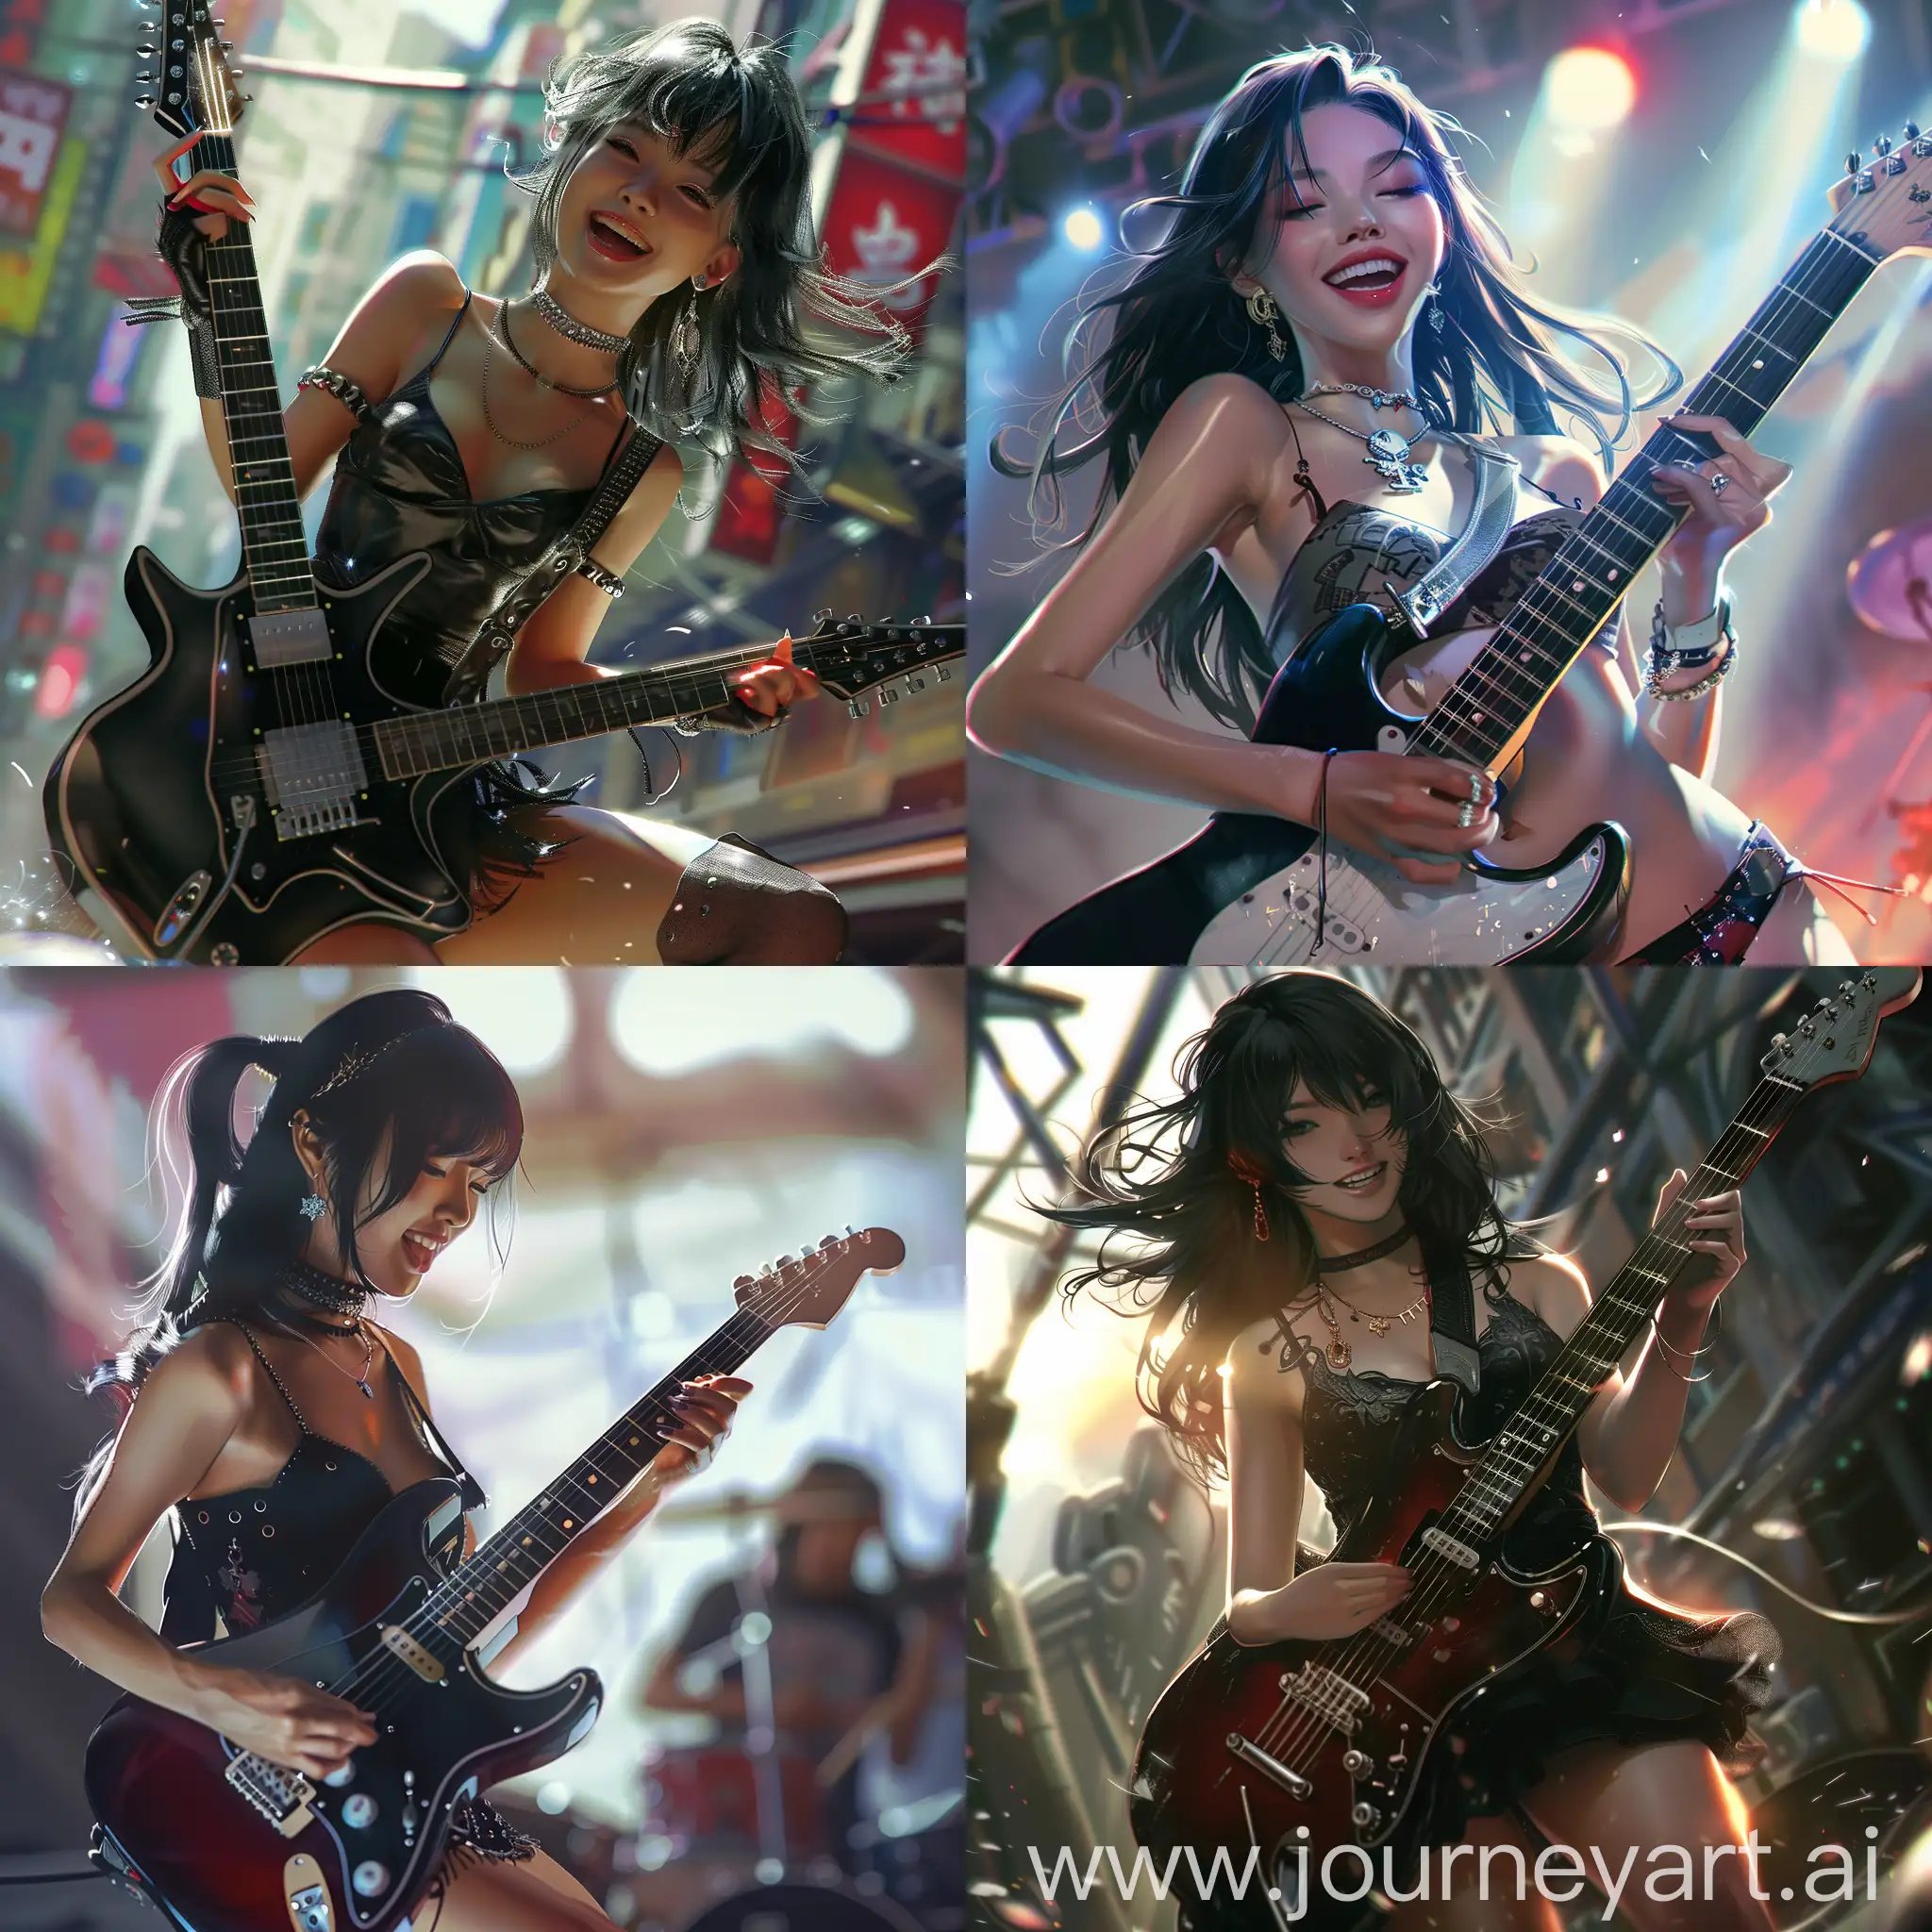 Korean-Rock-Girl-Playing-Guitar-at-a-Sunny-Concert